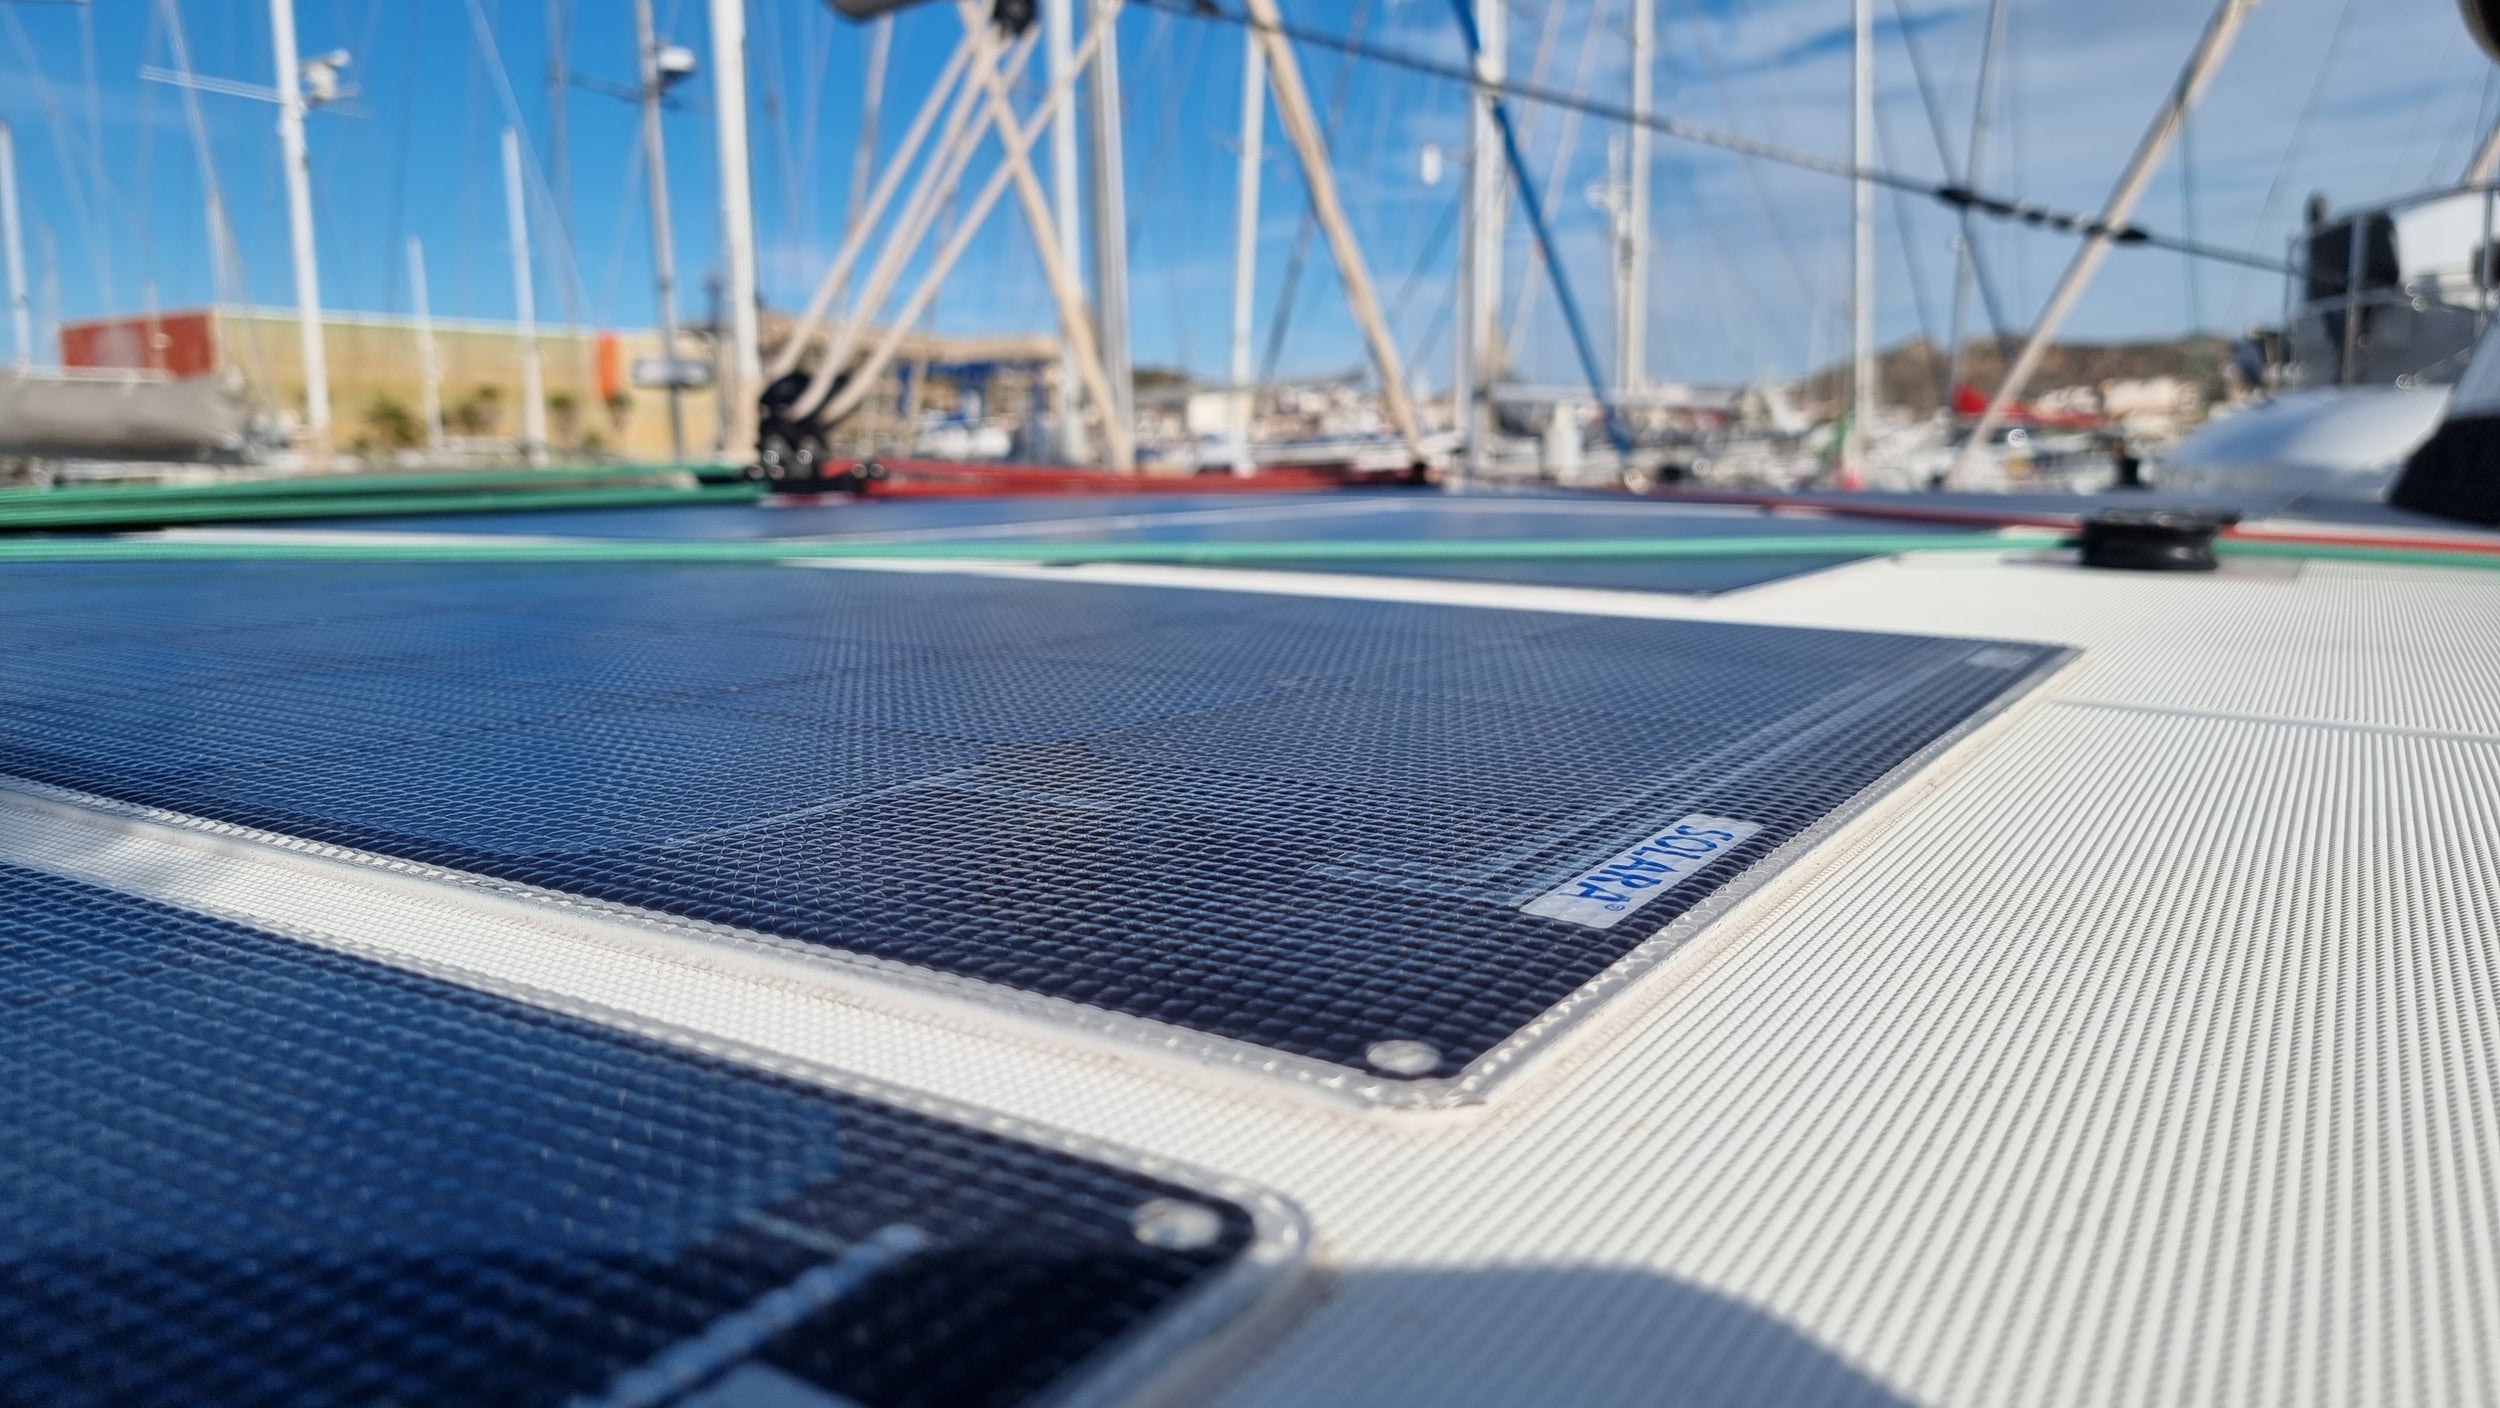 Solaranlagen fürs Boot